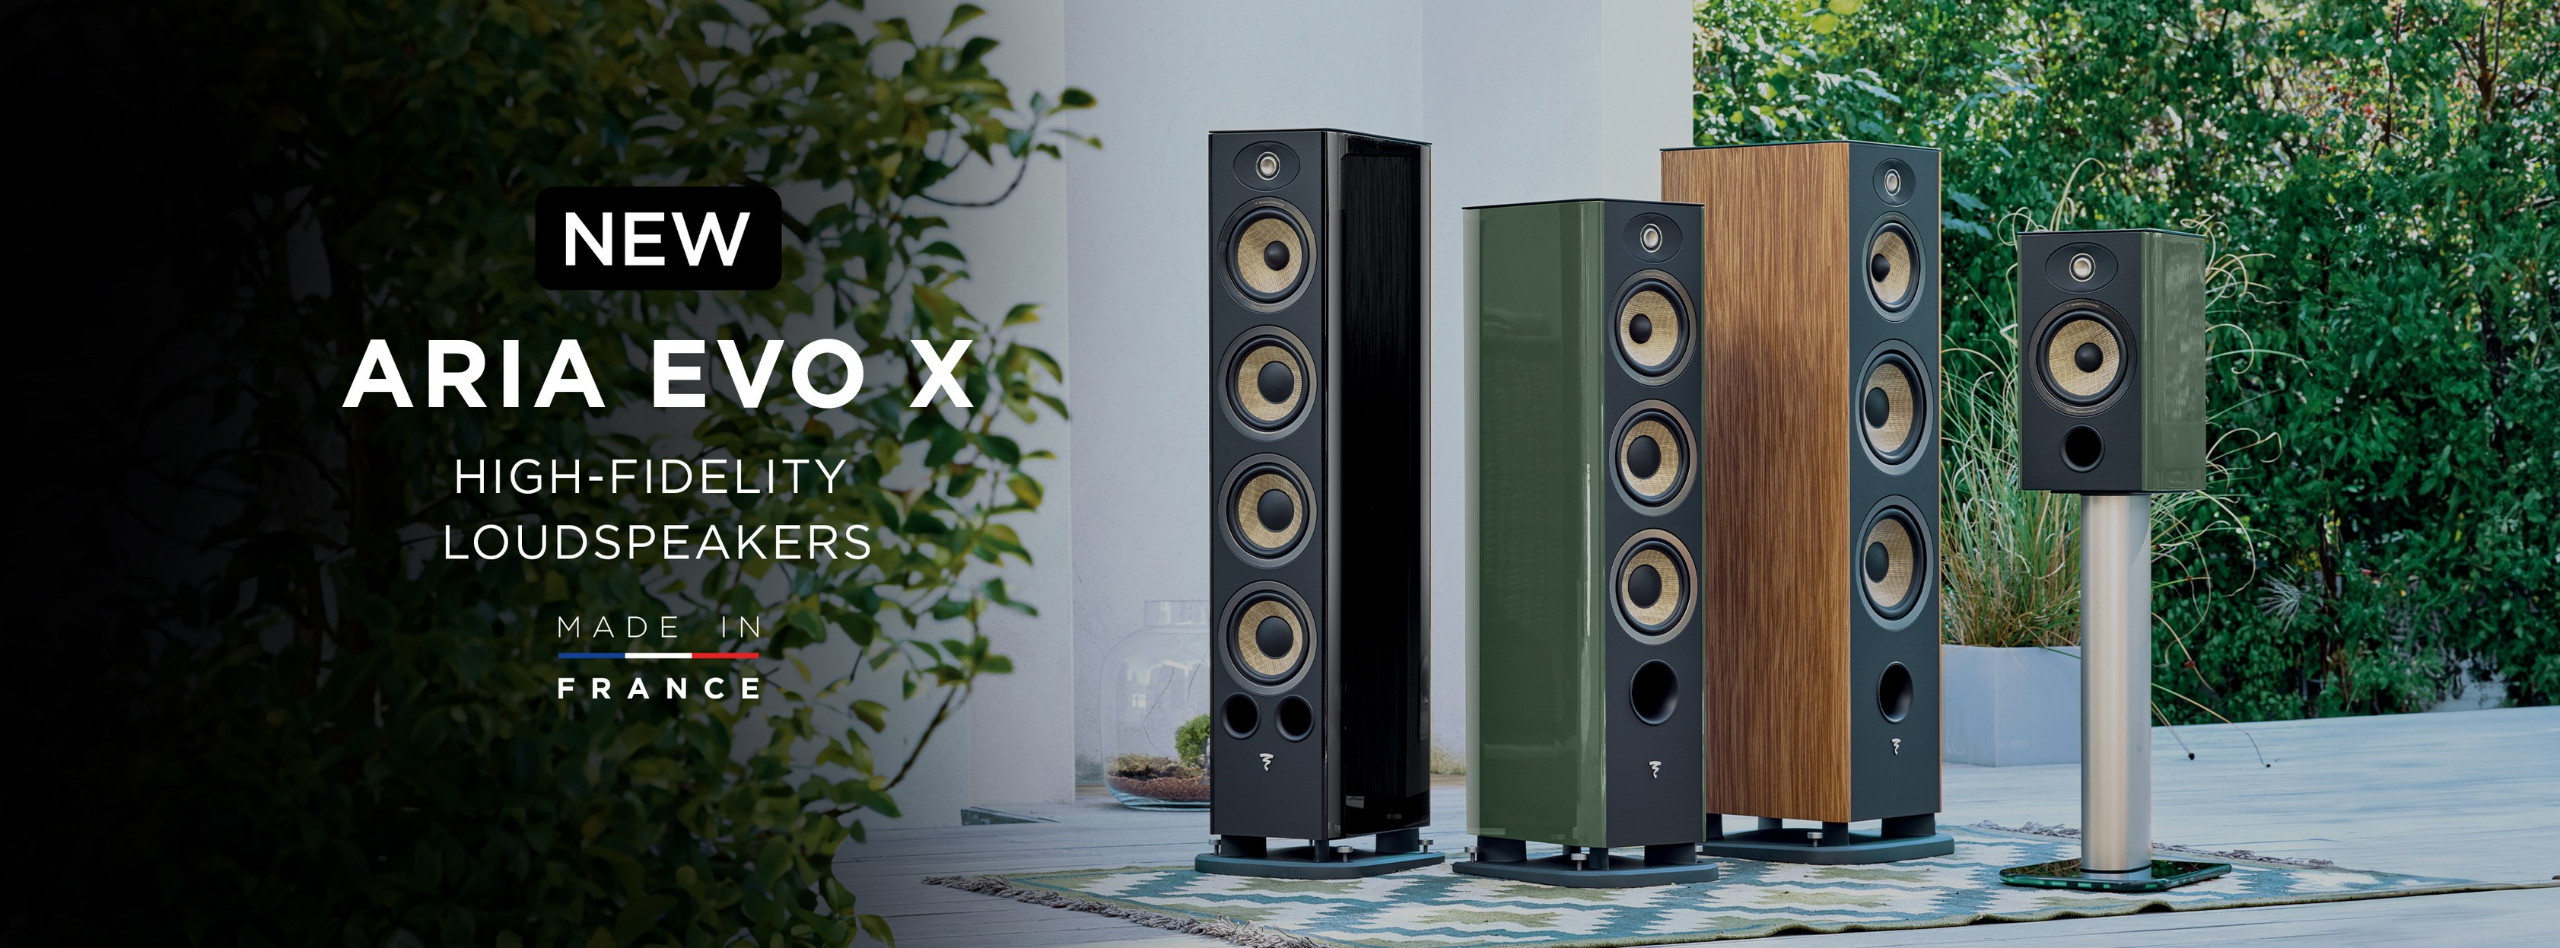 Focal Aria Evo X Series: Tích hợp nhiều công nghệ độc quyền của Focal cùng lựa chọn màu vỏ hoàn toàn mới | Audio Hoàng Hải